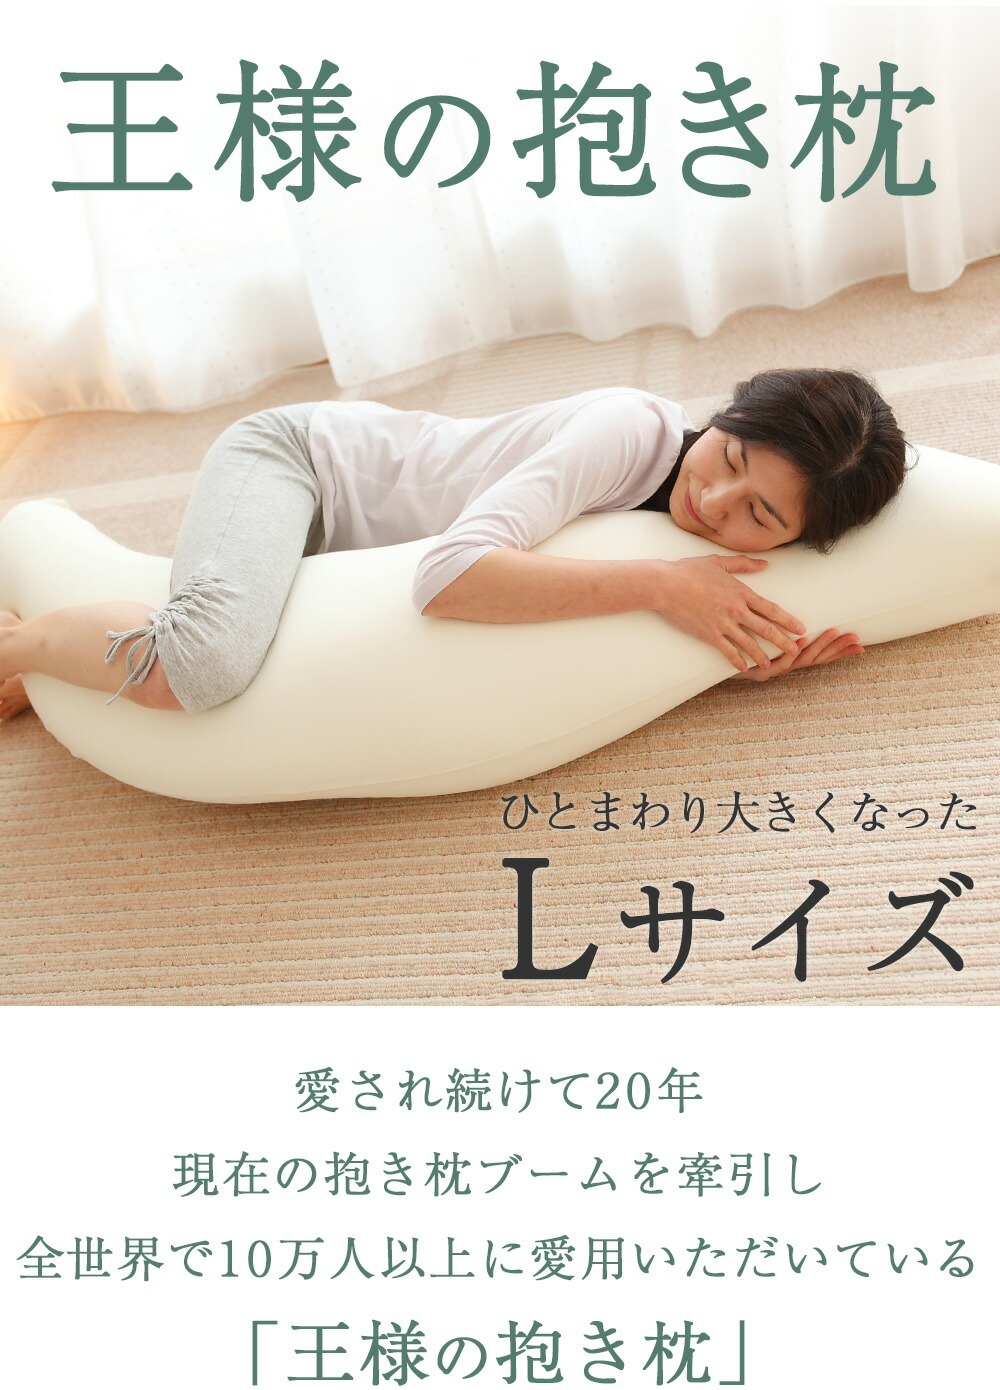 王様の抱き枕Lサイズ (抱き枕カバー付き) 大人気の「王様の抱き枕」BIG